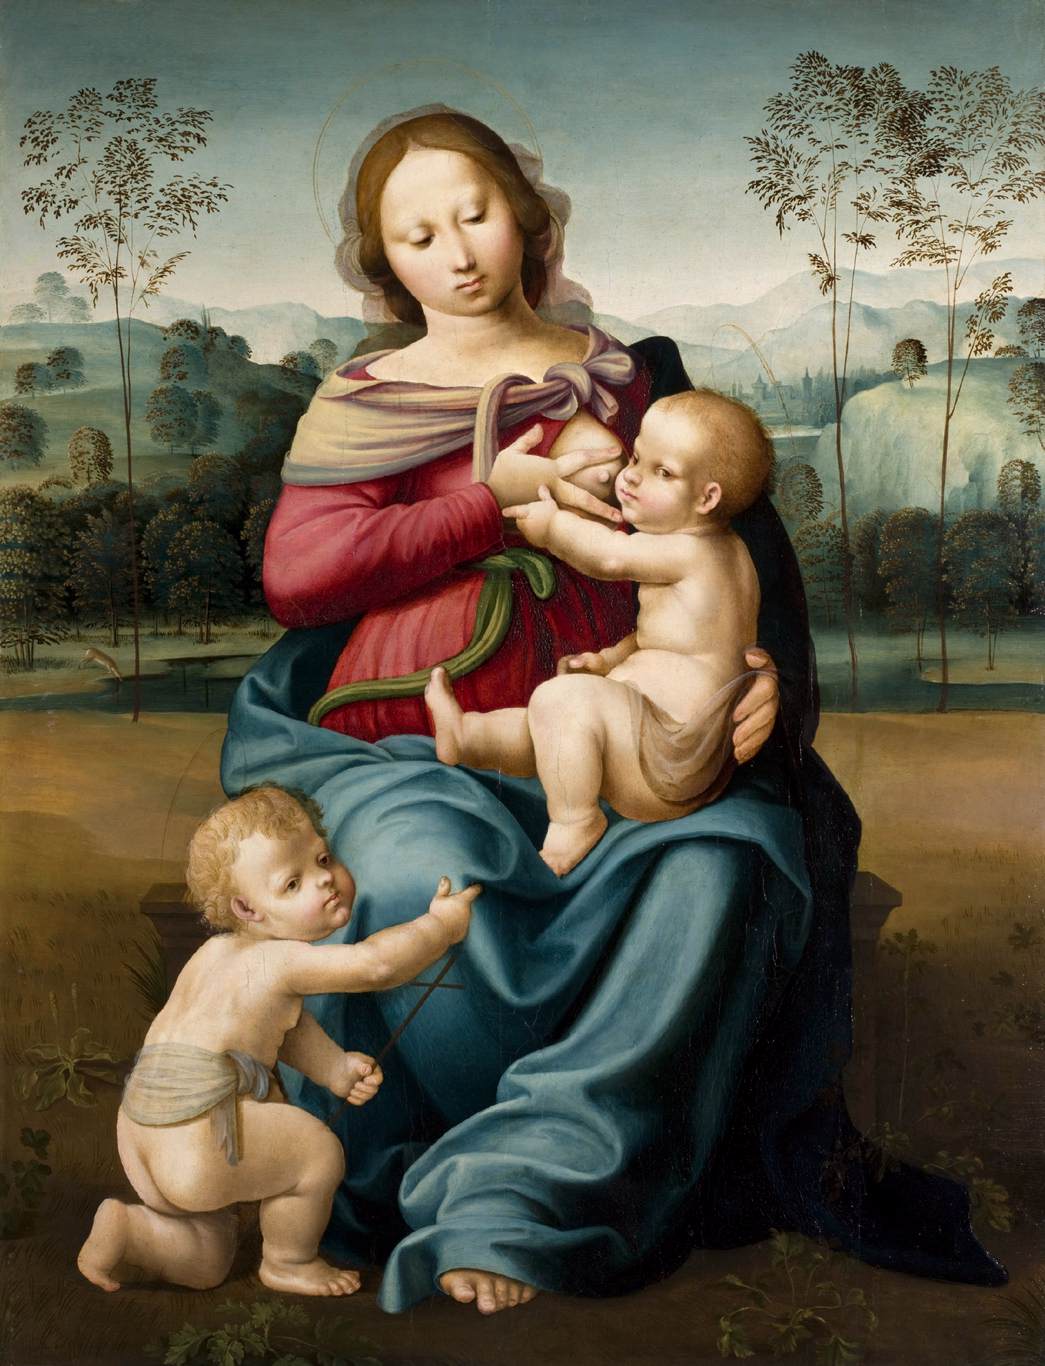 הבתולה מניקה את הילד עם התינוק חואן באוטיסטה